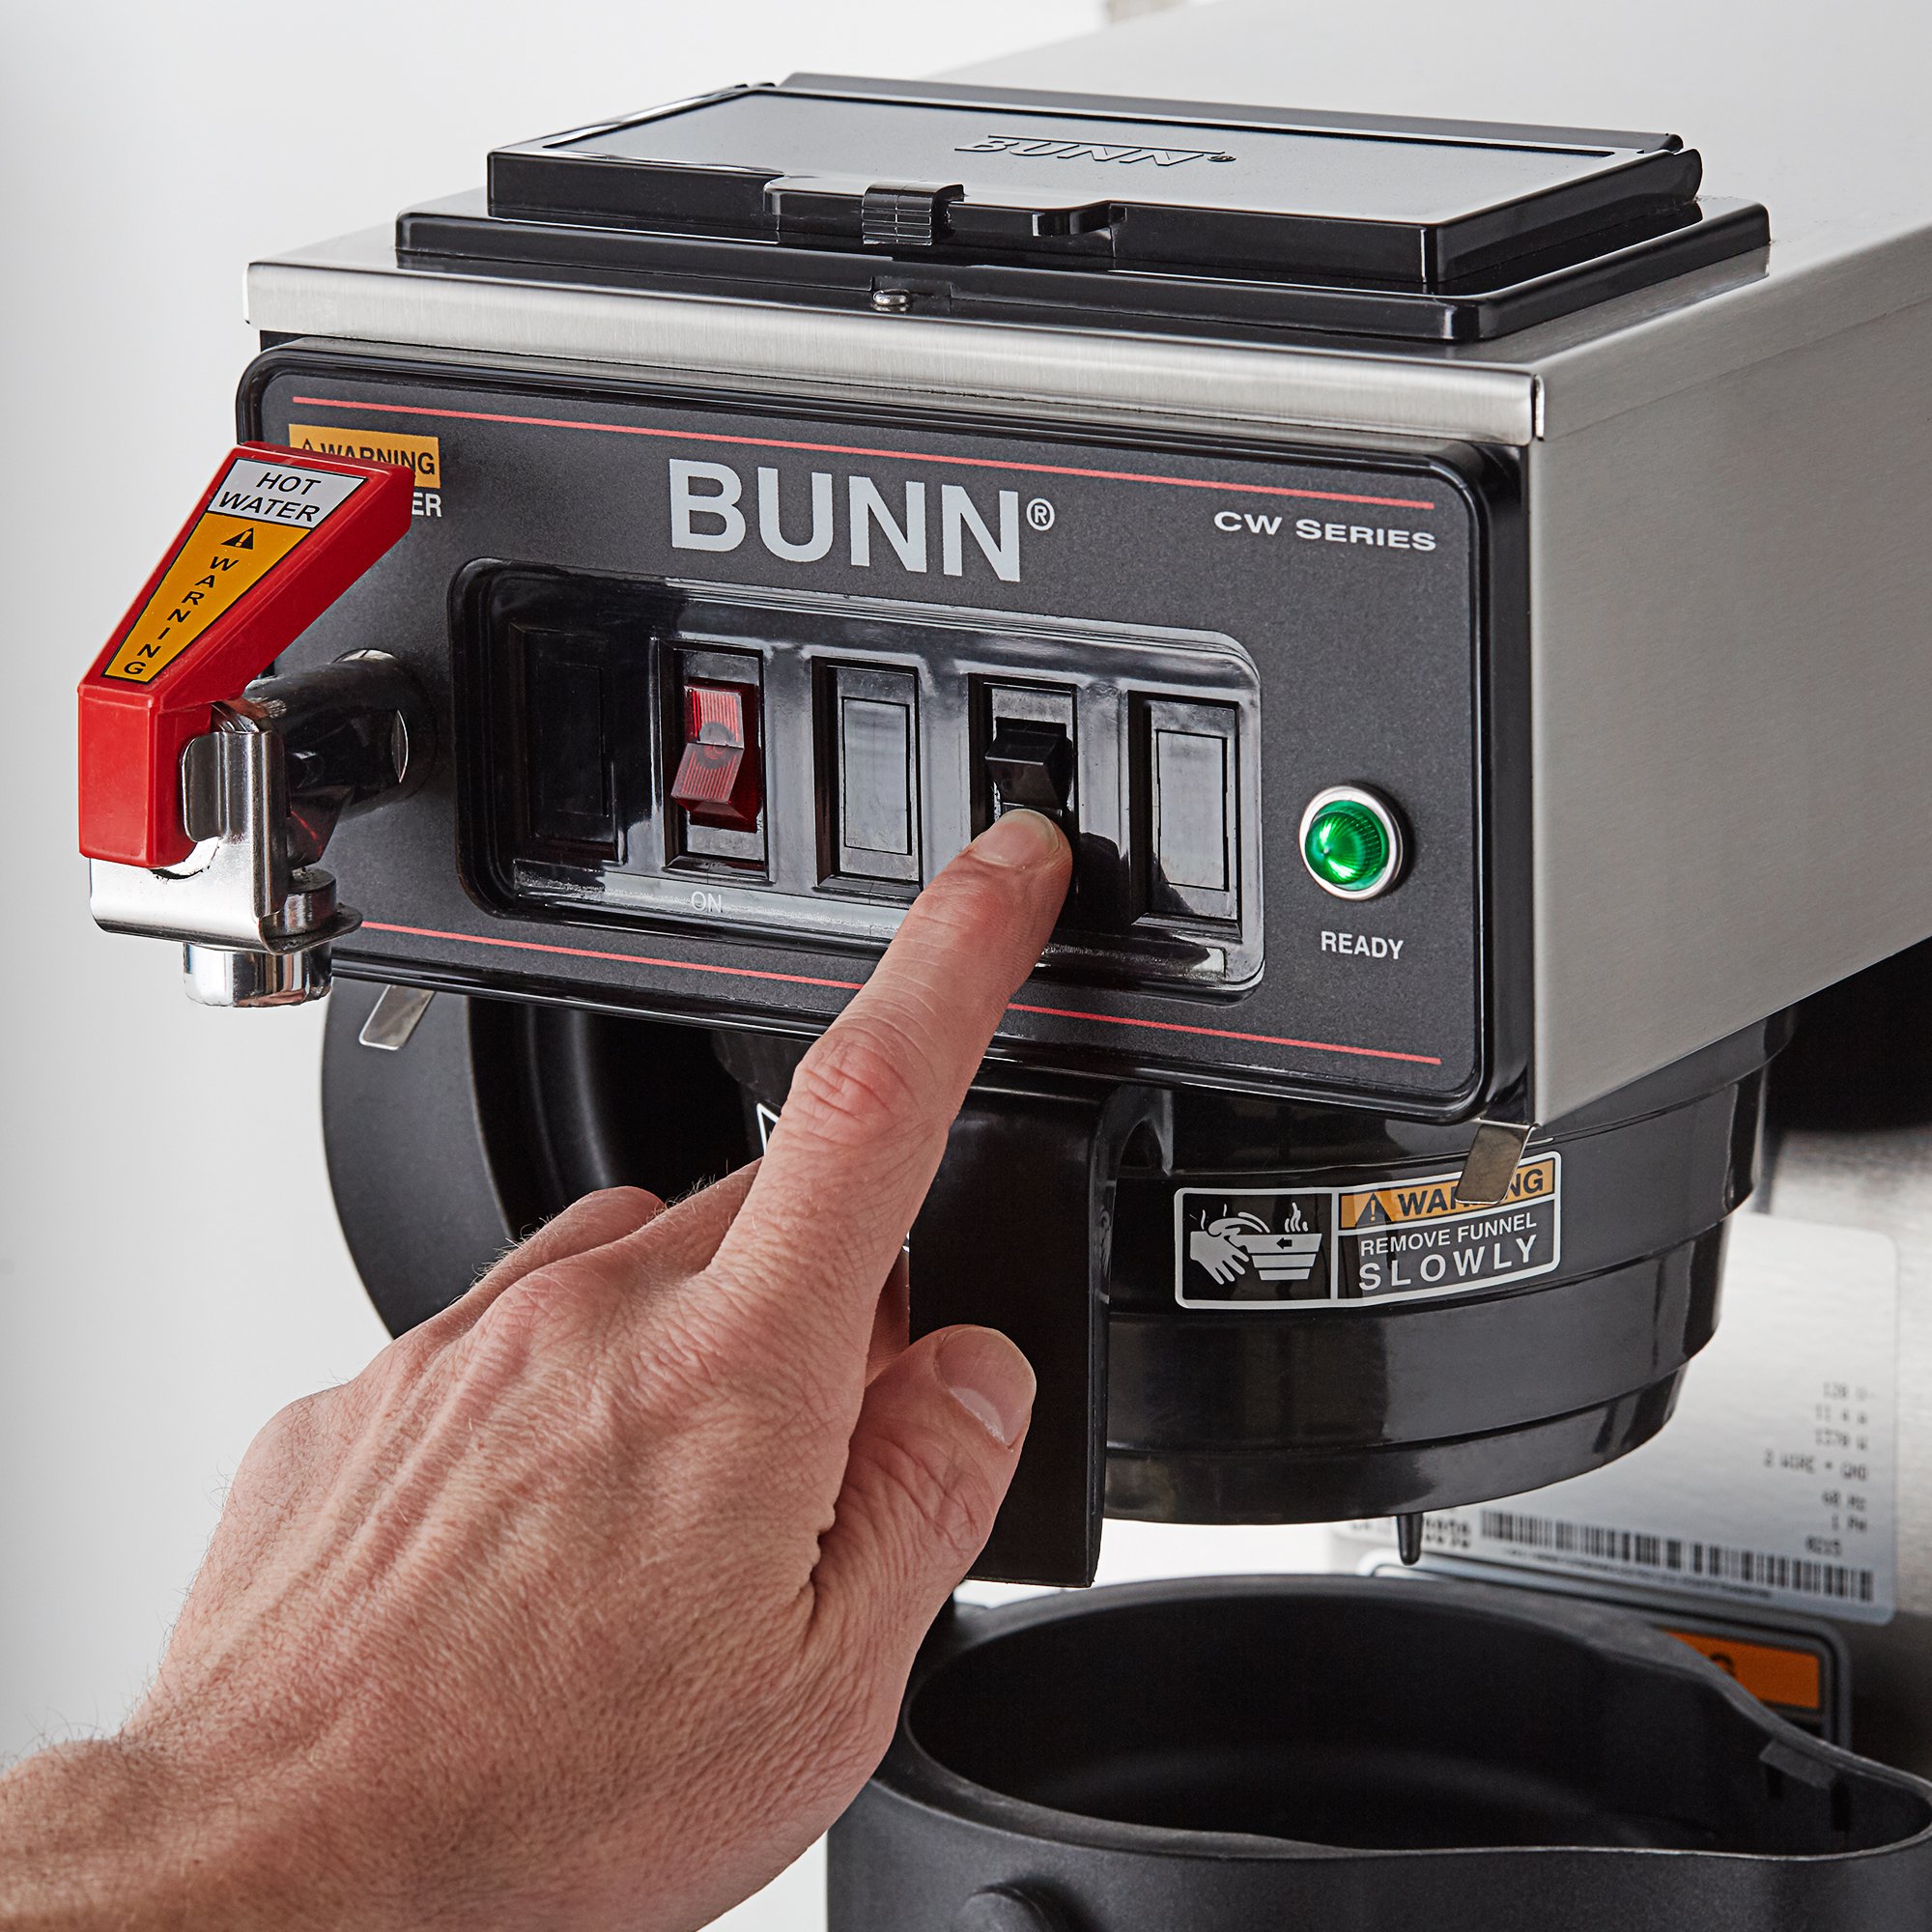 Starting a Bunn coffee maker